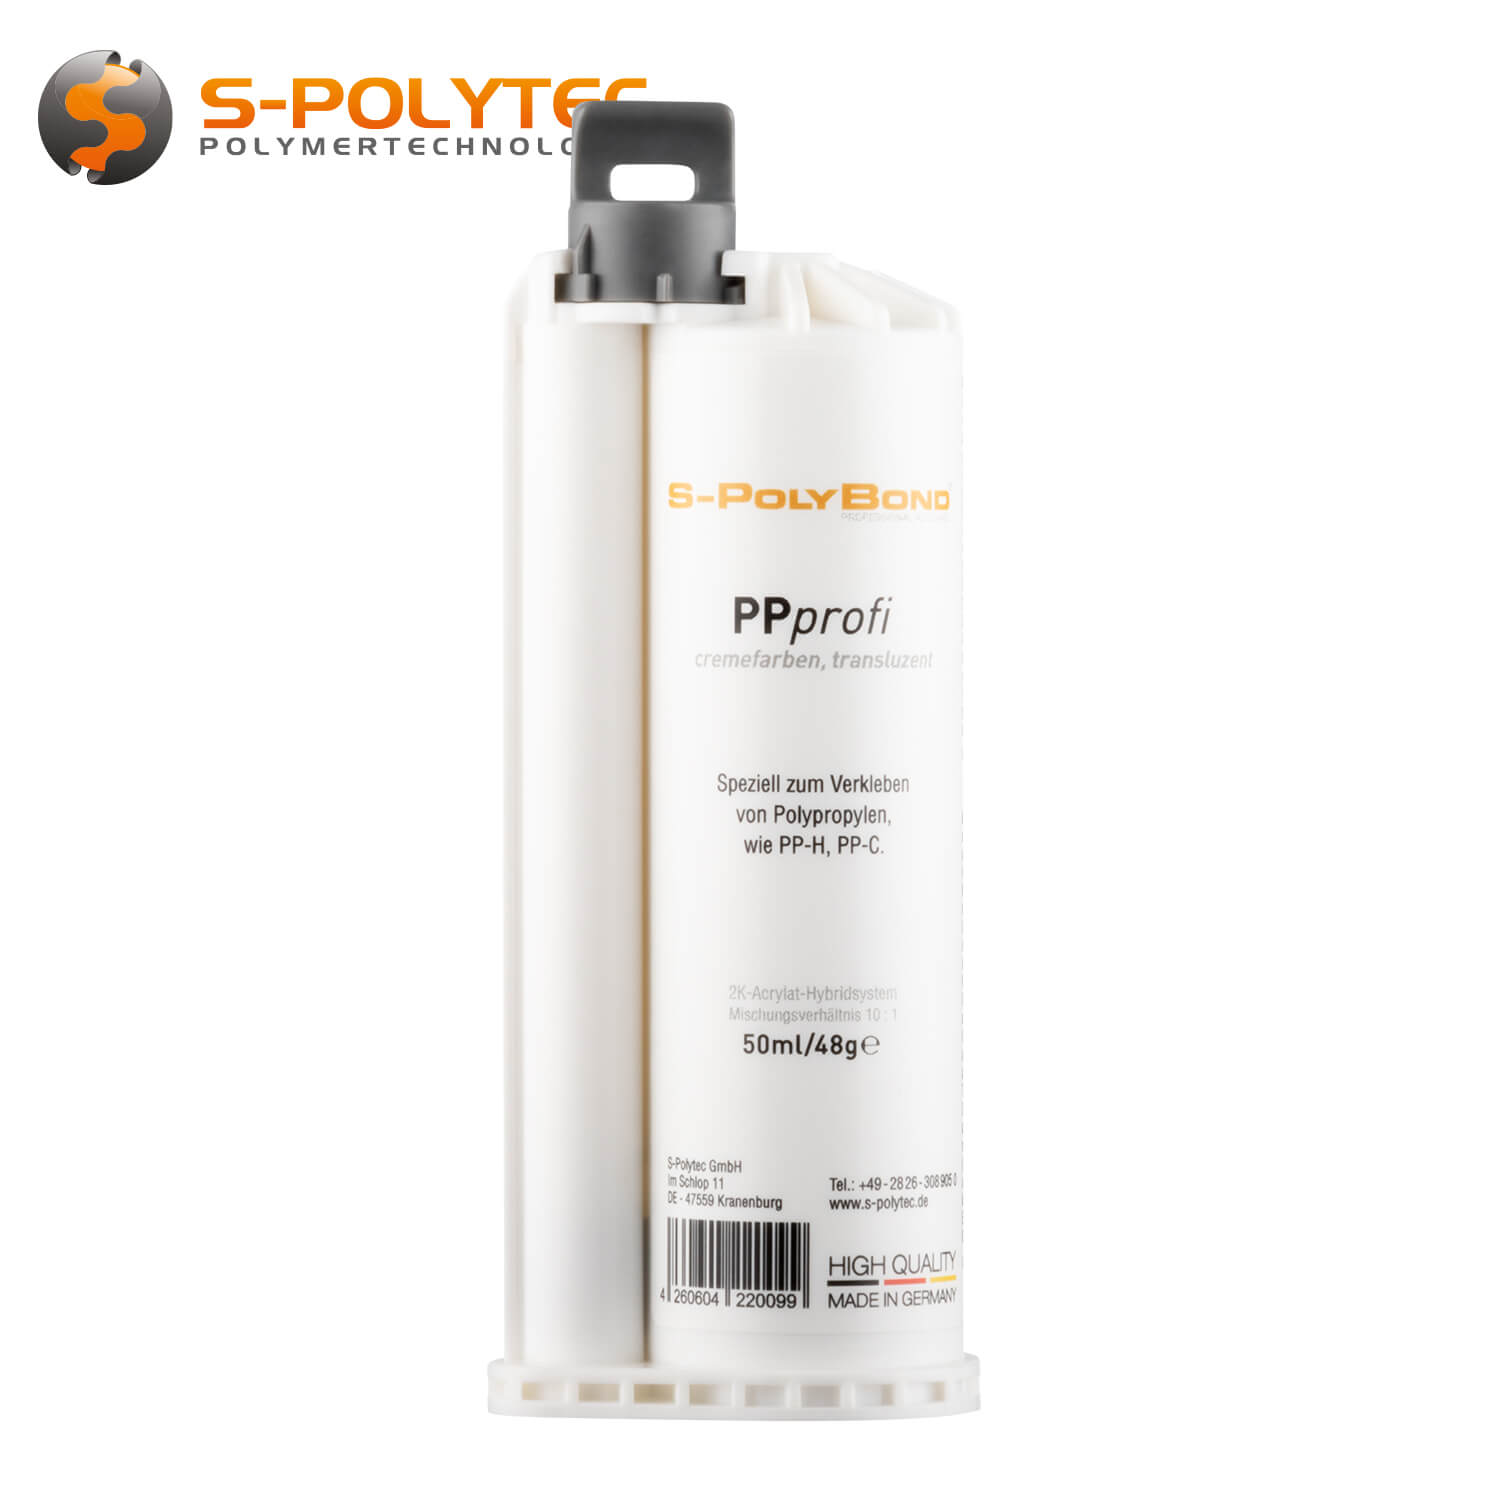 Polypropyleenlijm - PPprofi 50ml voor het verlijmen van PP-H en PP-C